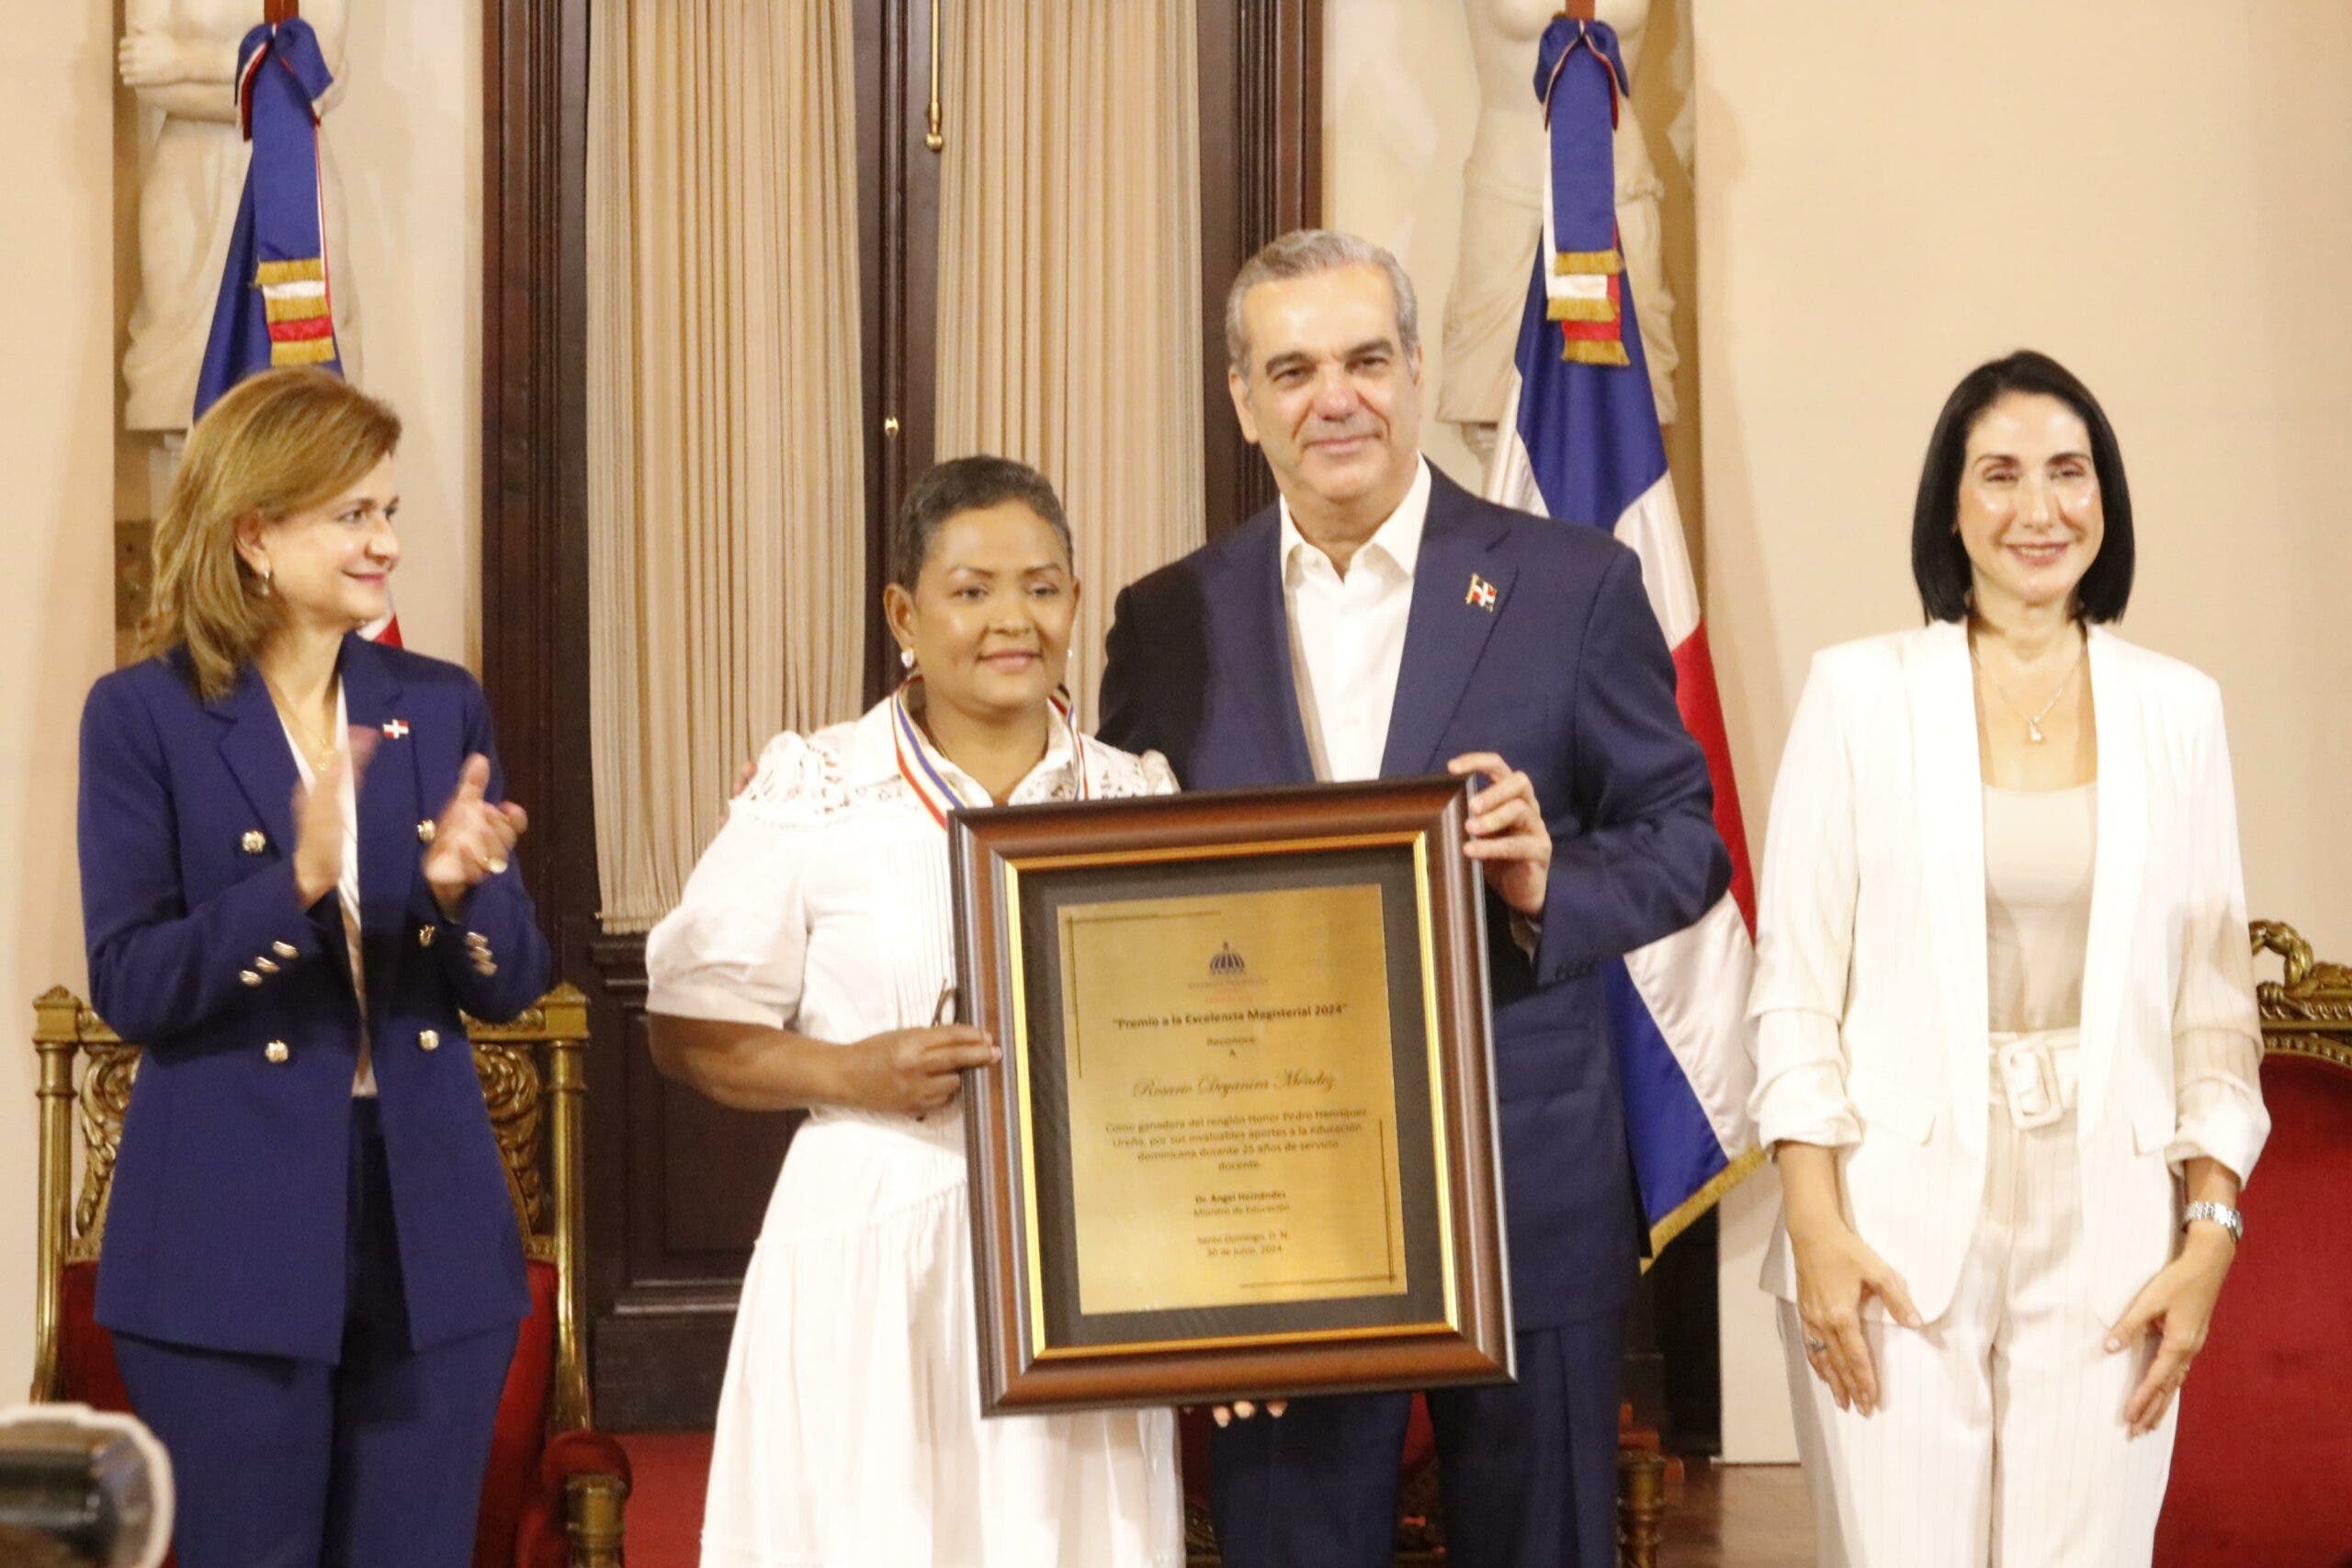 Maestra de la Regional 15 reconocida con mención de honor en Presidencia